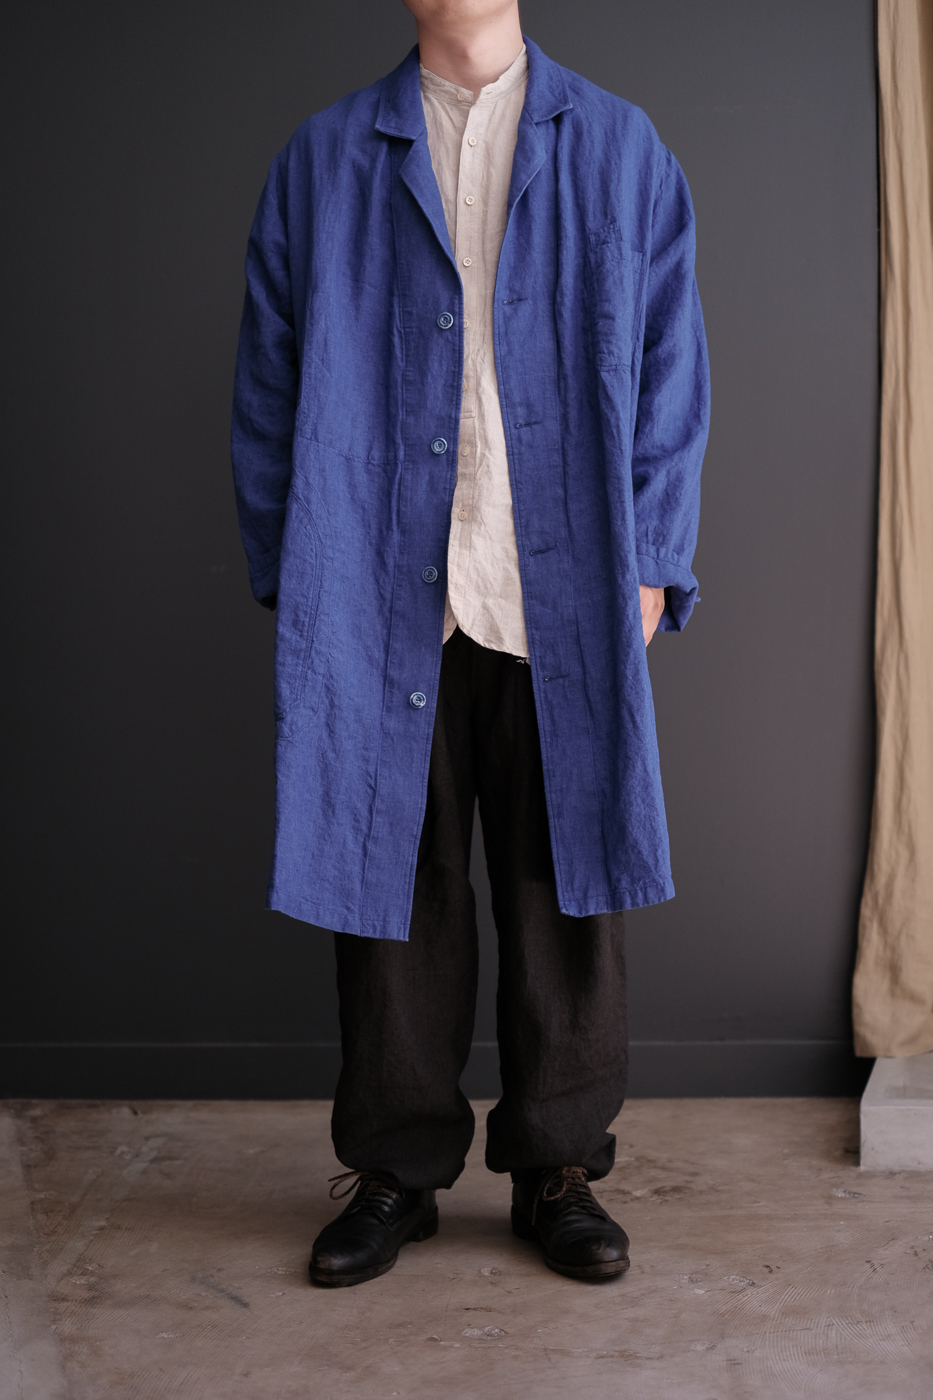 カラーブルーkaval indigo linen coat